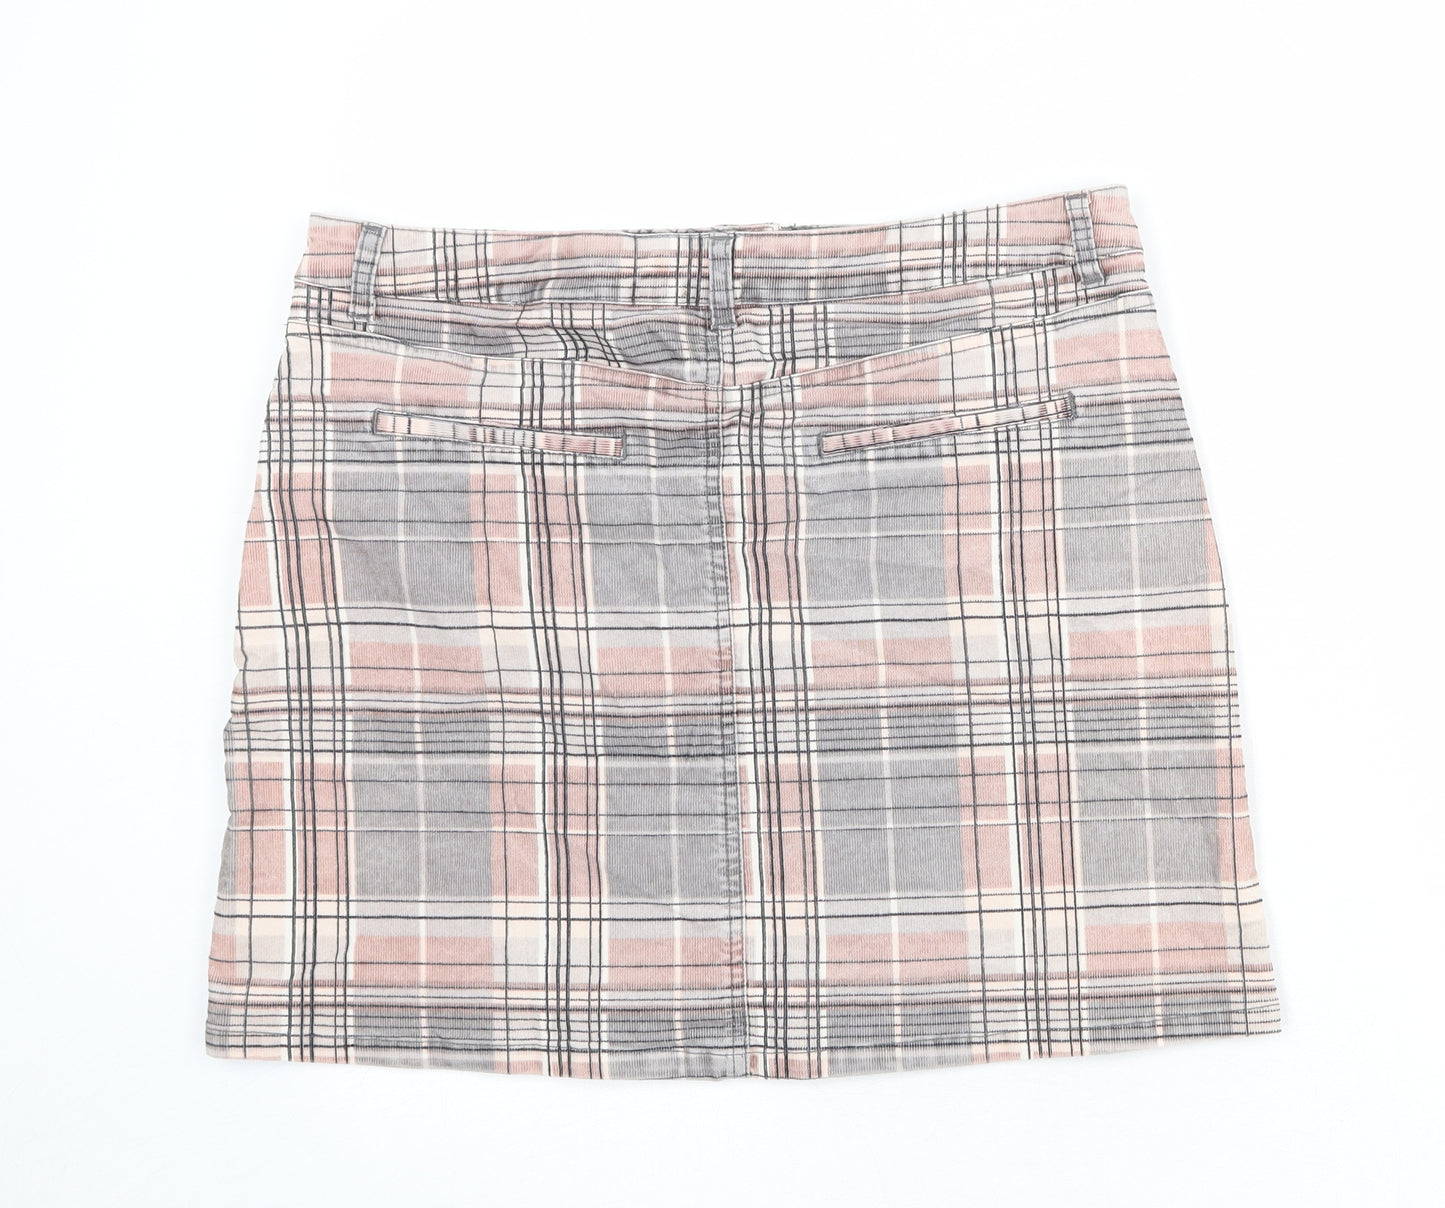 NEXT Womens Multicoloured Plaid Cotton A-Line Skirt Size 14 Zip